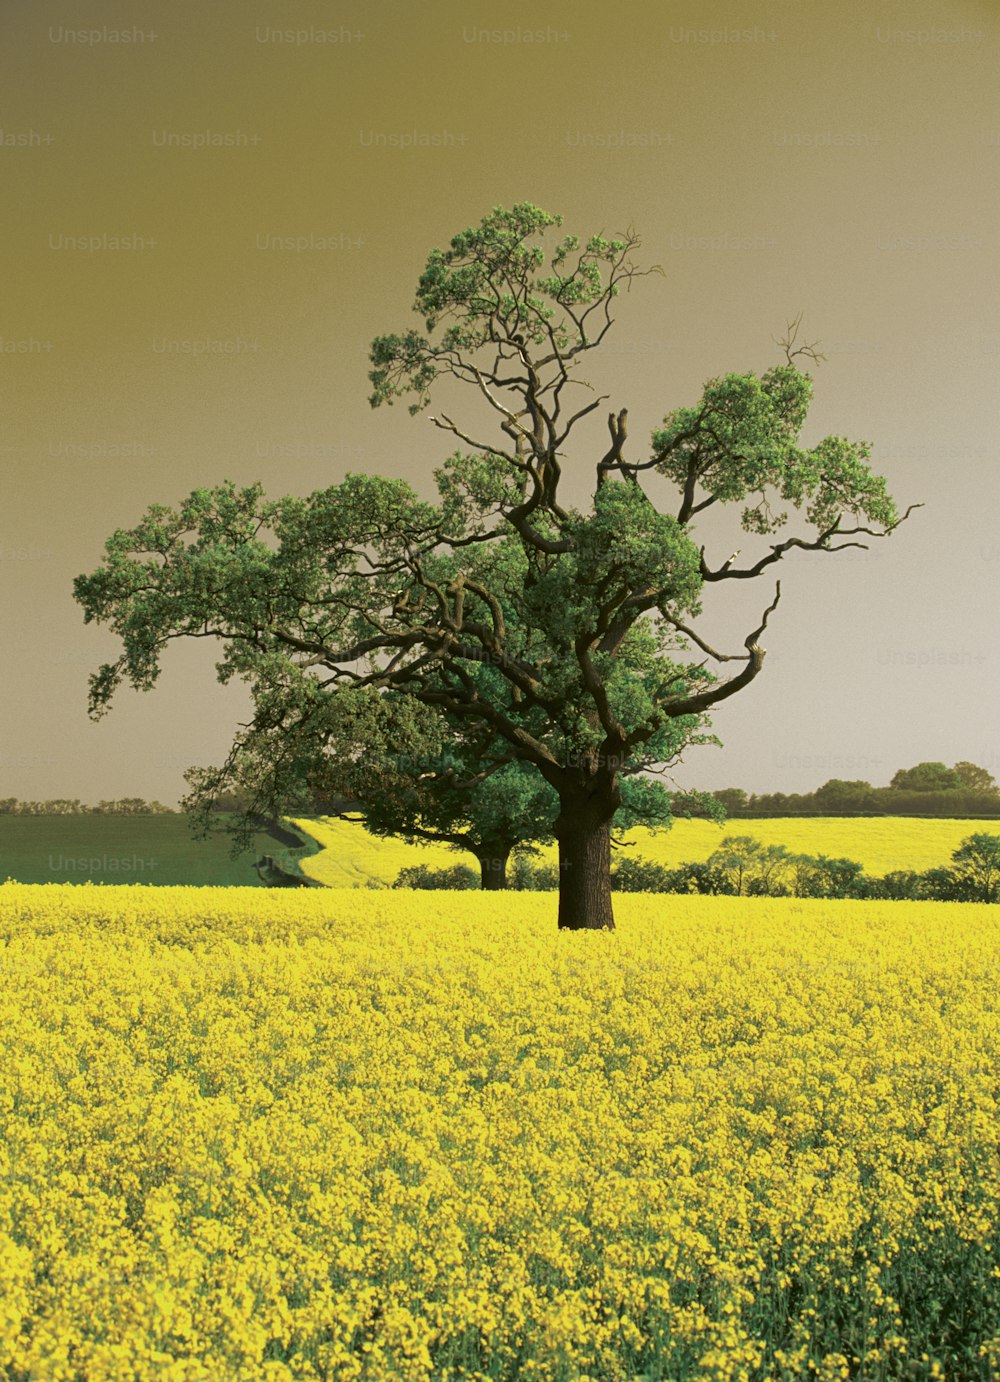 Un árbol solitario en un campo de flores amarillas